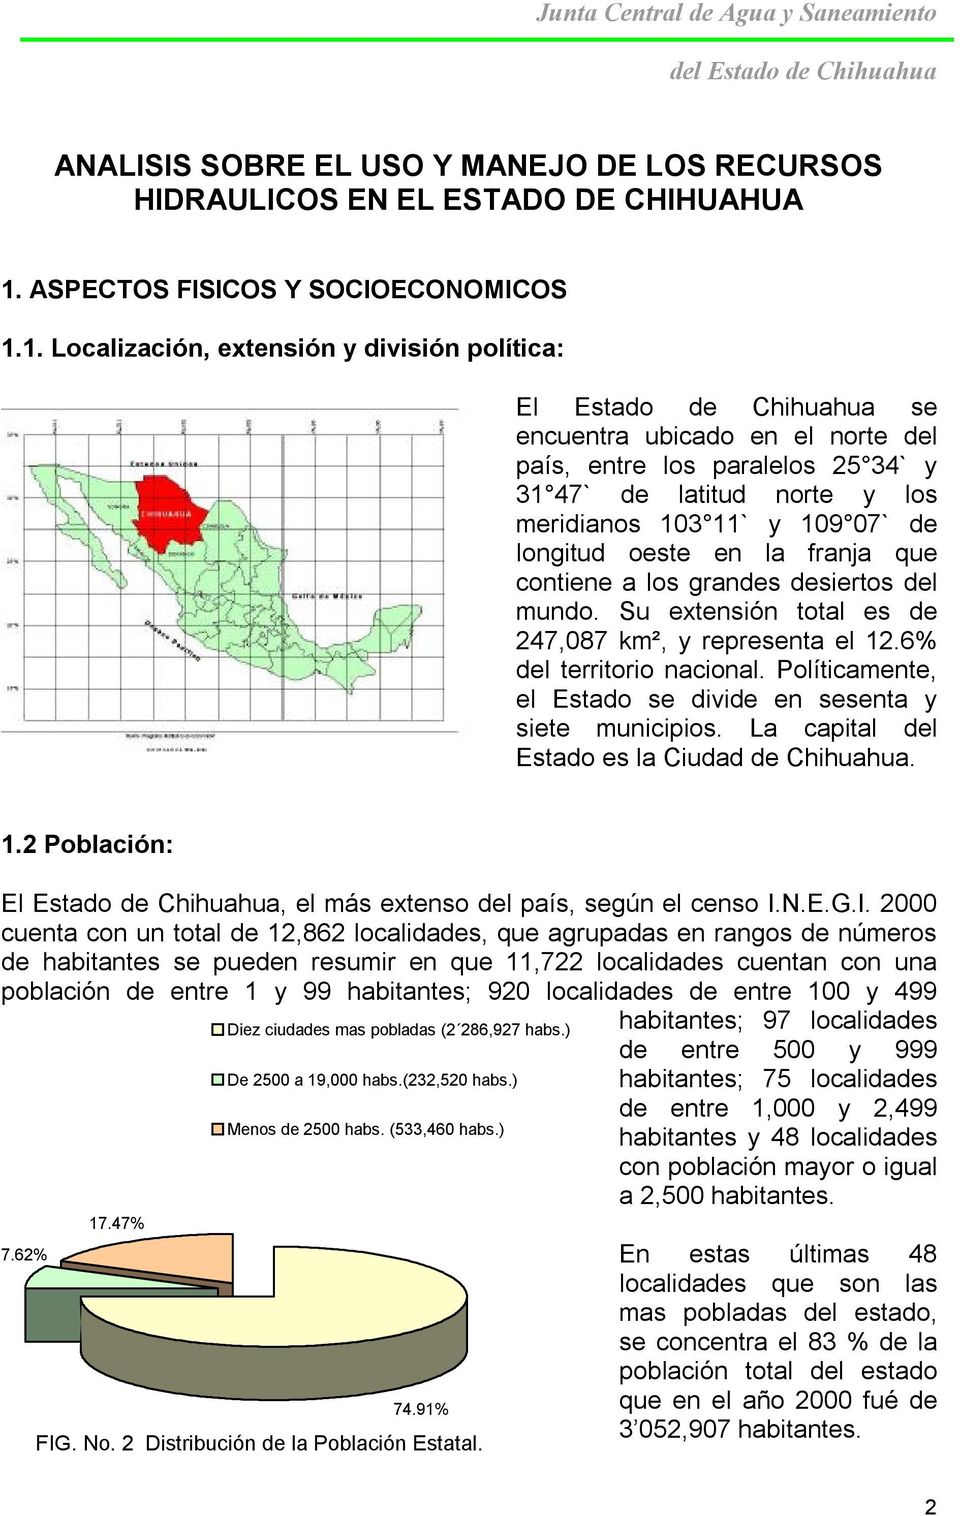 1. Localización, extensión y división política: El Estado de Chihuahua se encuentra ubicado en el norte del país, entre los paralelos 25 34` y 31 47` de latitud norte y los meridianos 103 11` y 109